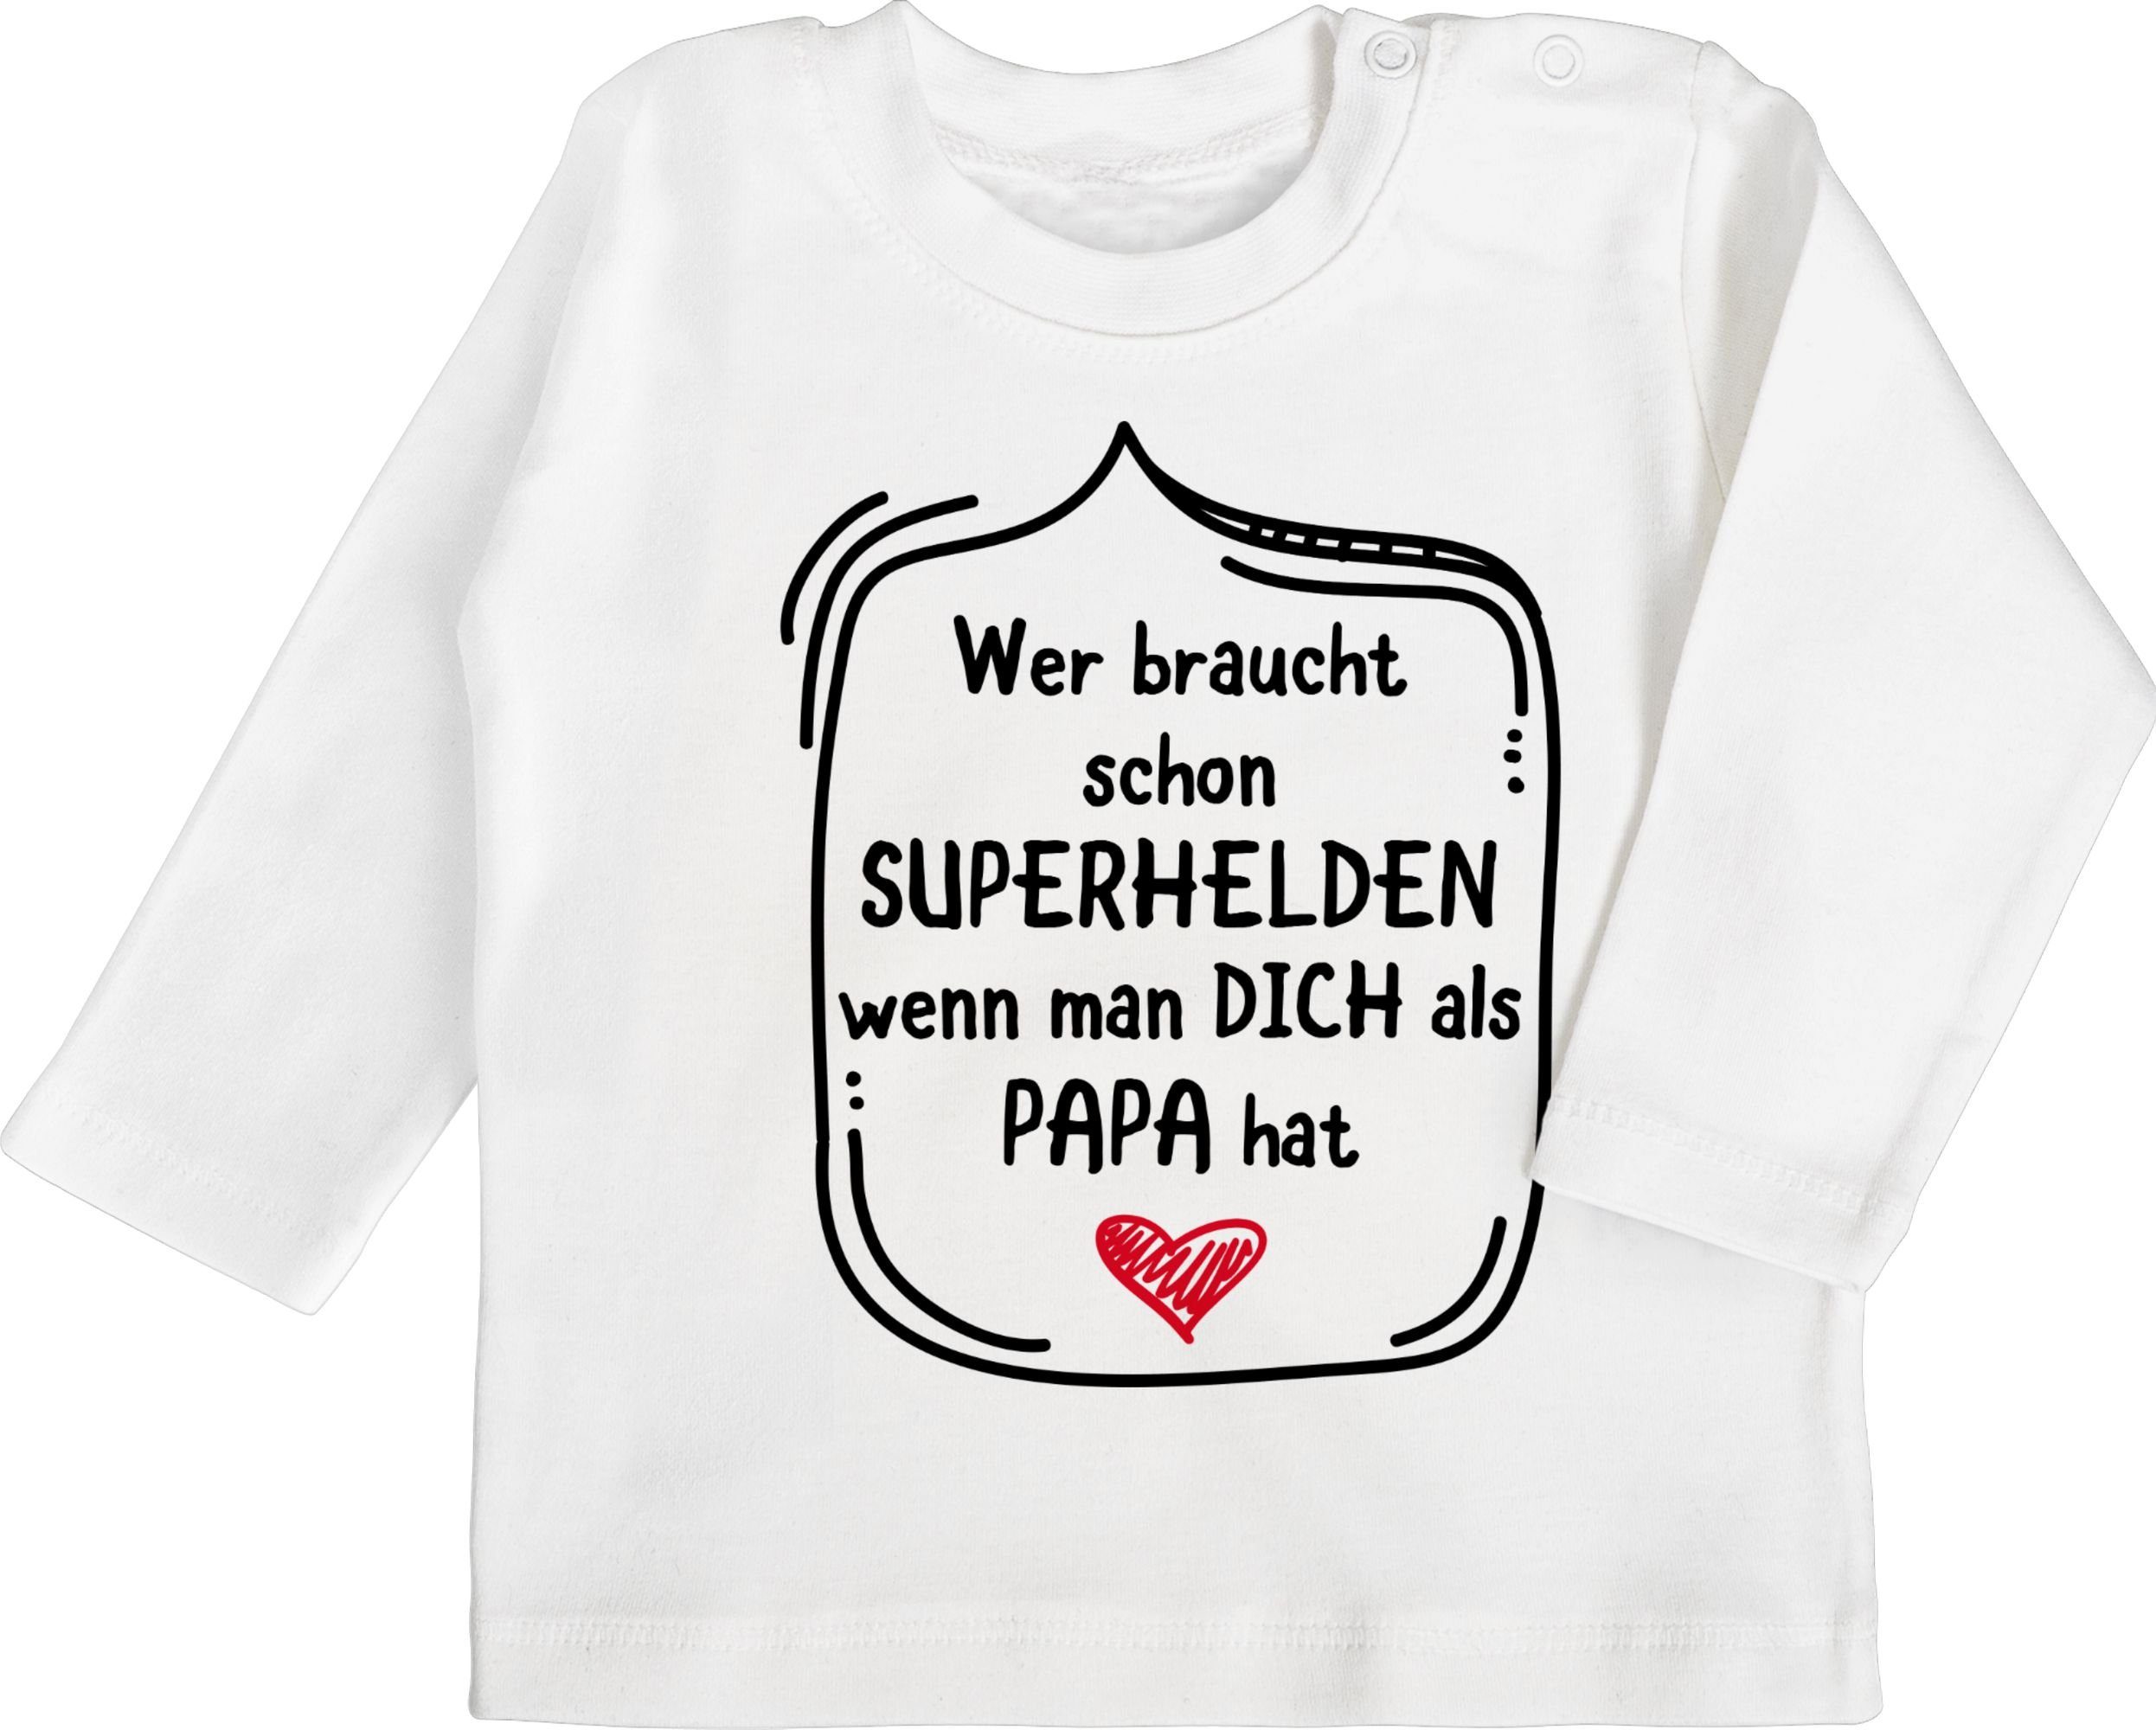 Shirtracer T-Shirt Wer braucht schon 1 Vatertag Geschenk Baby Weiß Superhelden dich Papa als wenn hat man